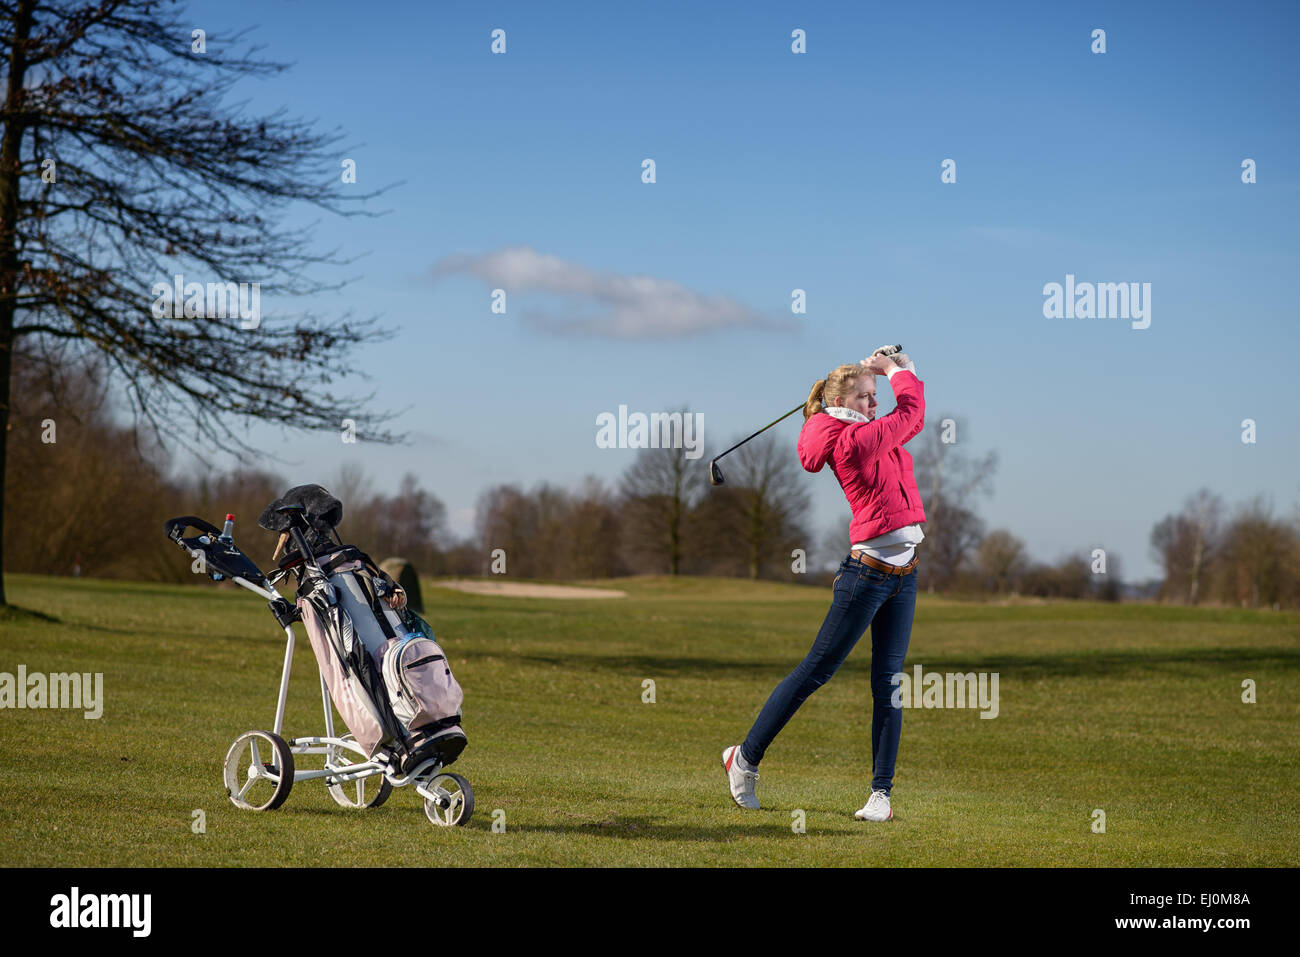 Belle jeune femme élancée golfeur jouant un tir d'approche sur le fairway de regarder le vol de la balle après l'AVC Banque D'Images